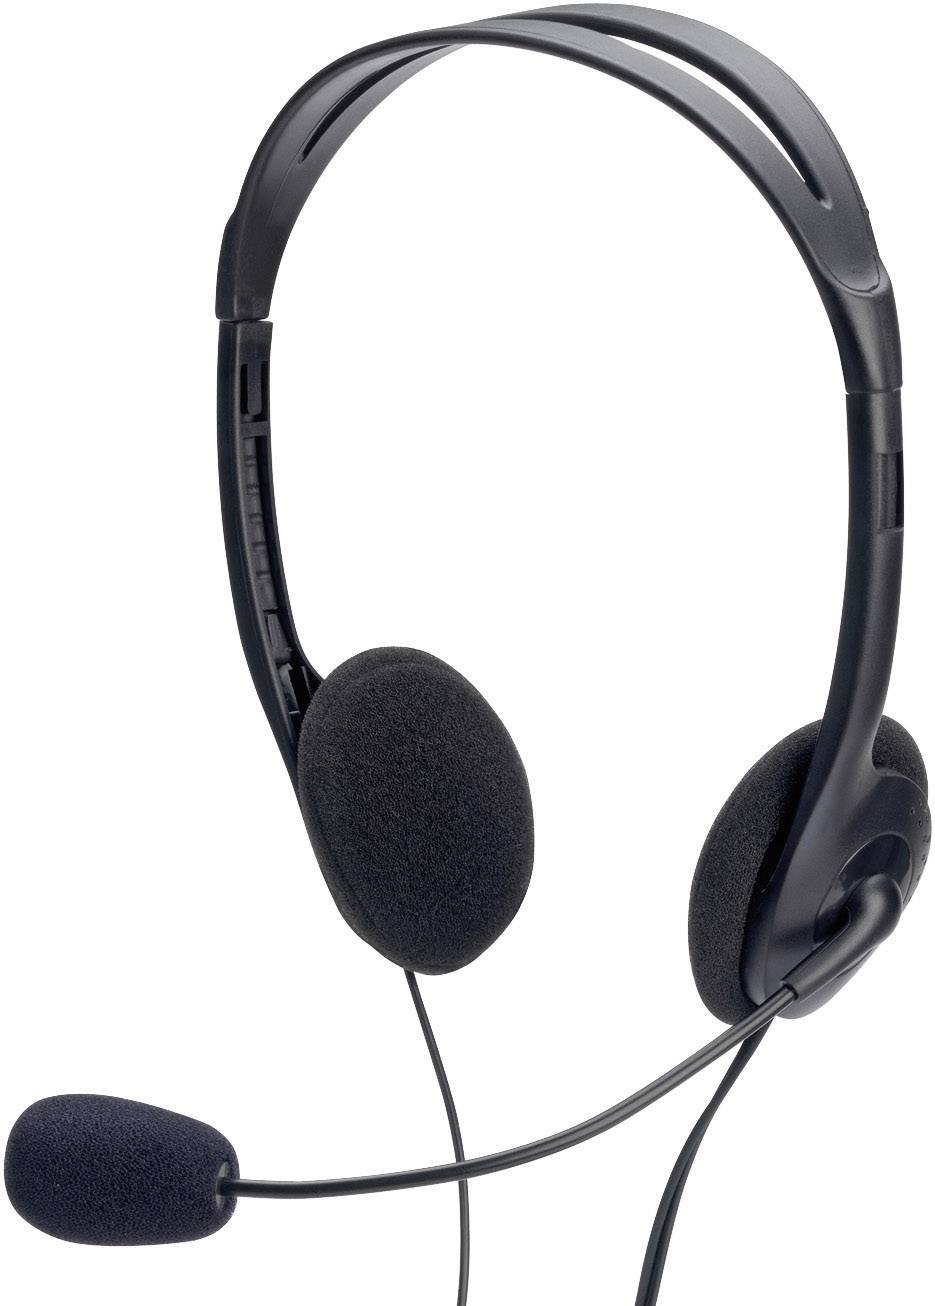 EDNET Headset mit Lautstärkenregler Stereokopfhörer mit Mikrofon 3,5mm Stereostecker und 1,8m Kabel